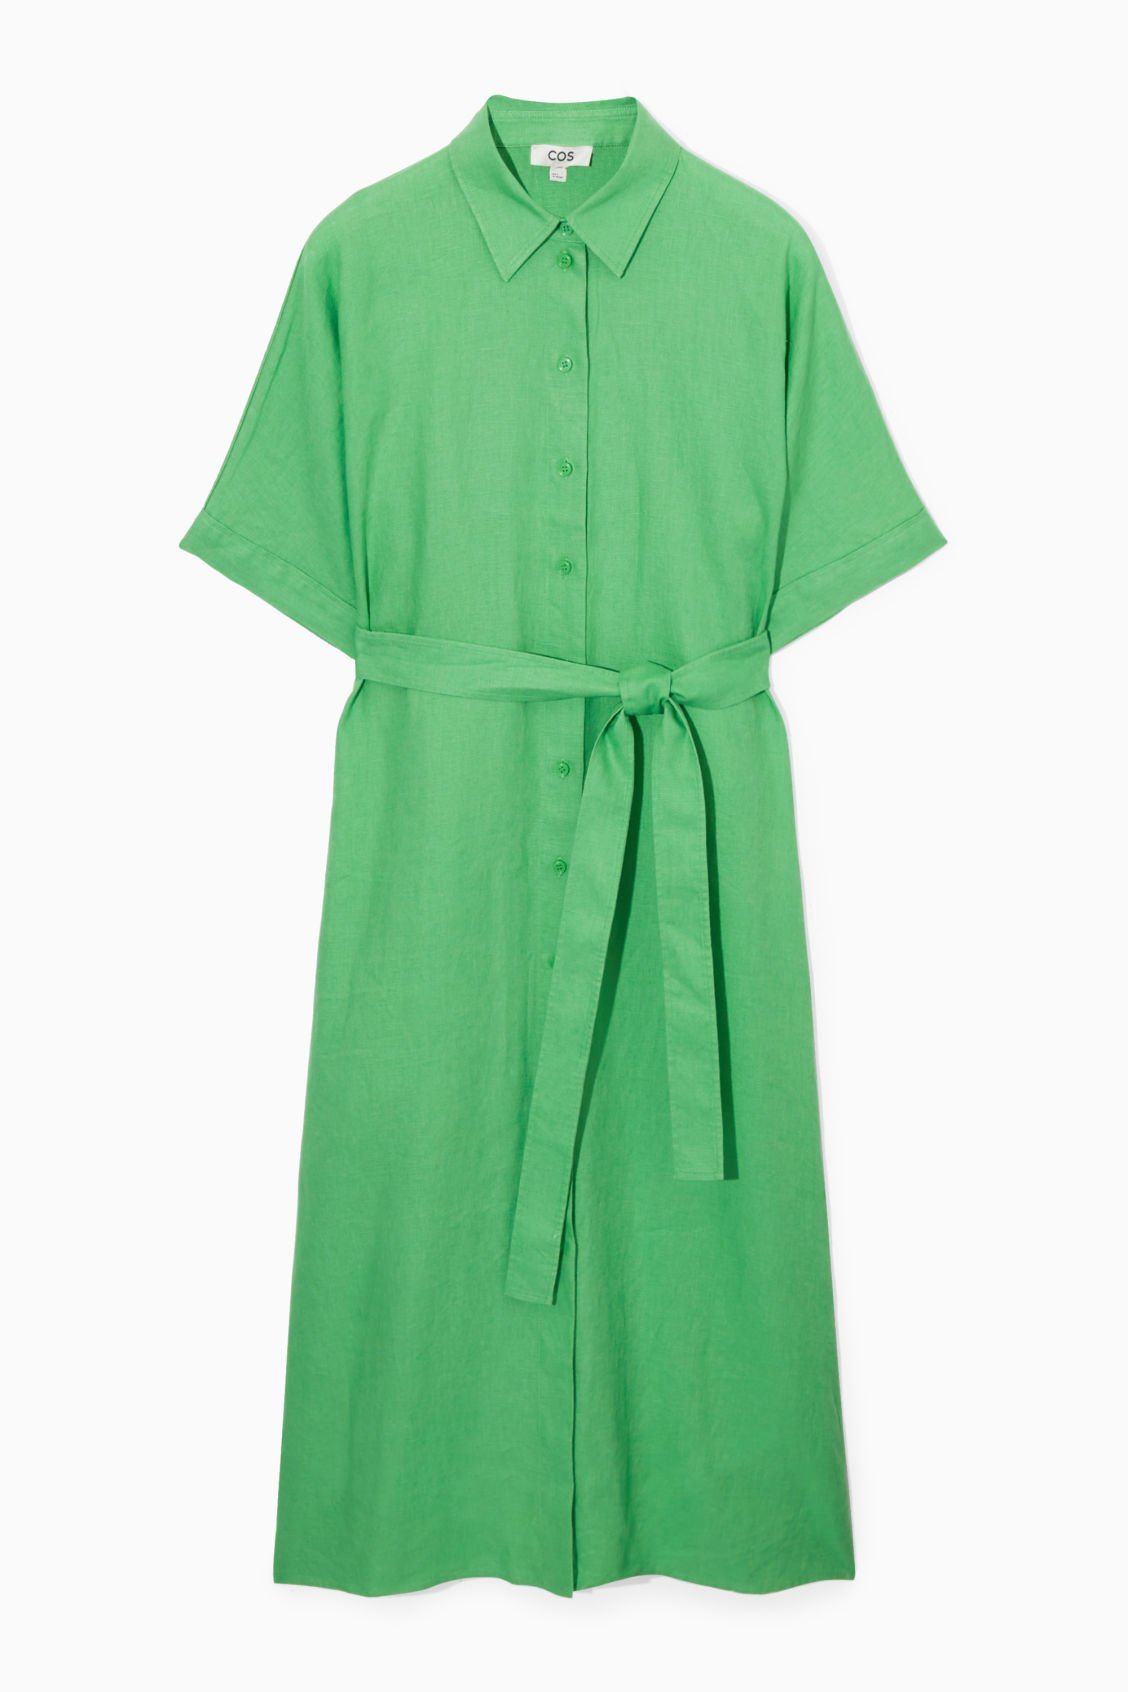 COS Shirt dress in light green